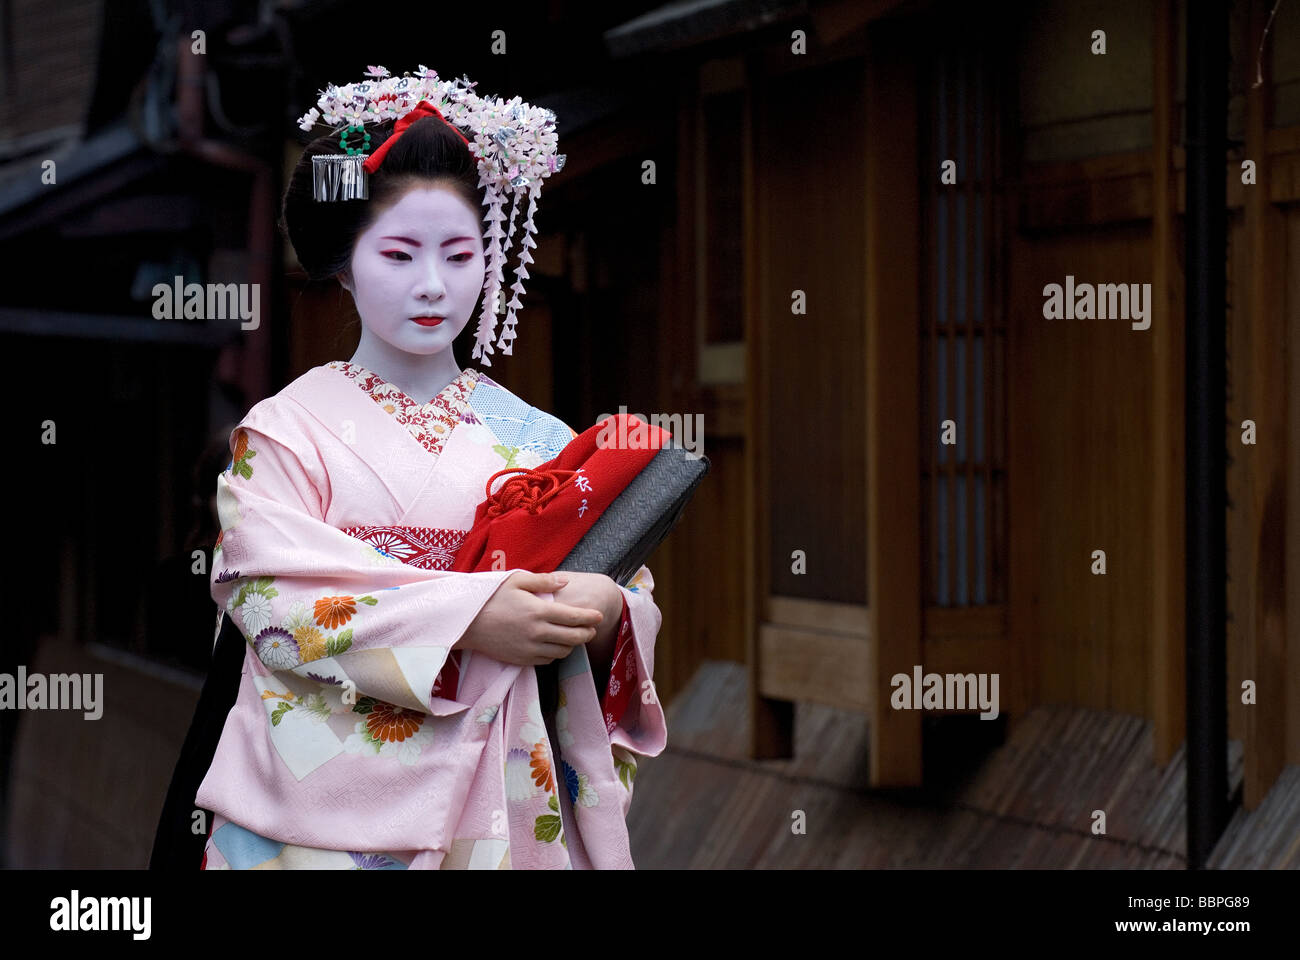 Ein Lehrling Geisha oder Maiko, zu Fuß entlang einer Gasse in Kyotos Shimbashi Stadtteil Gion. Stockfoto